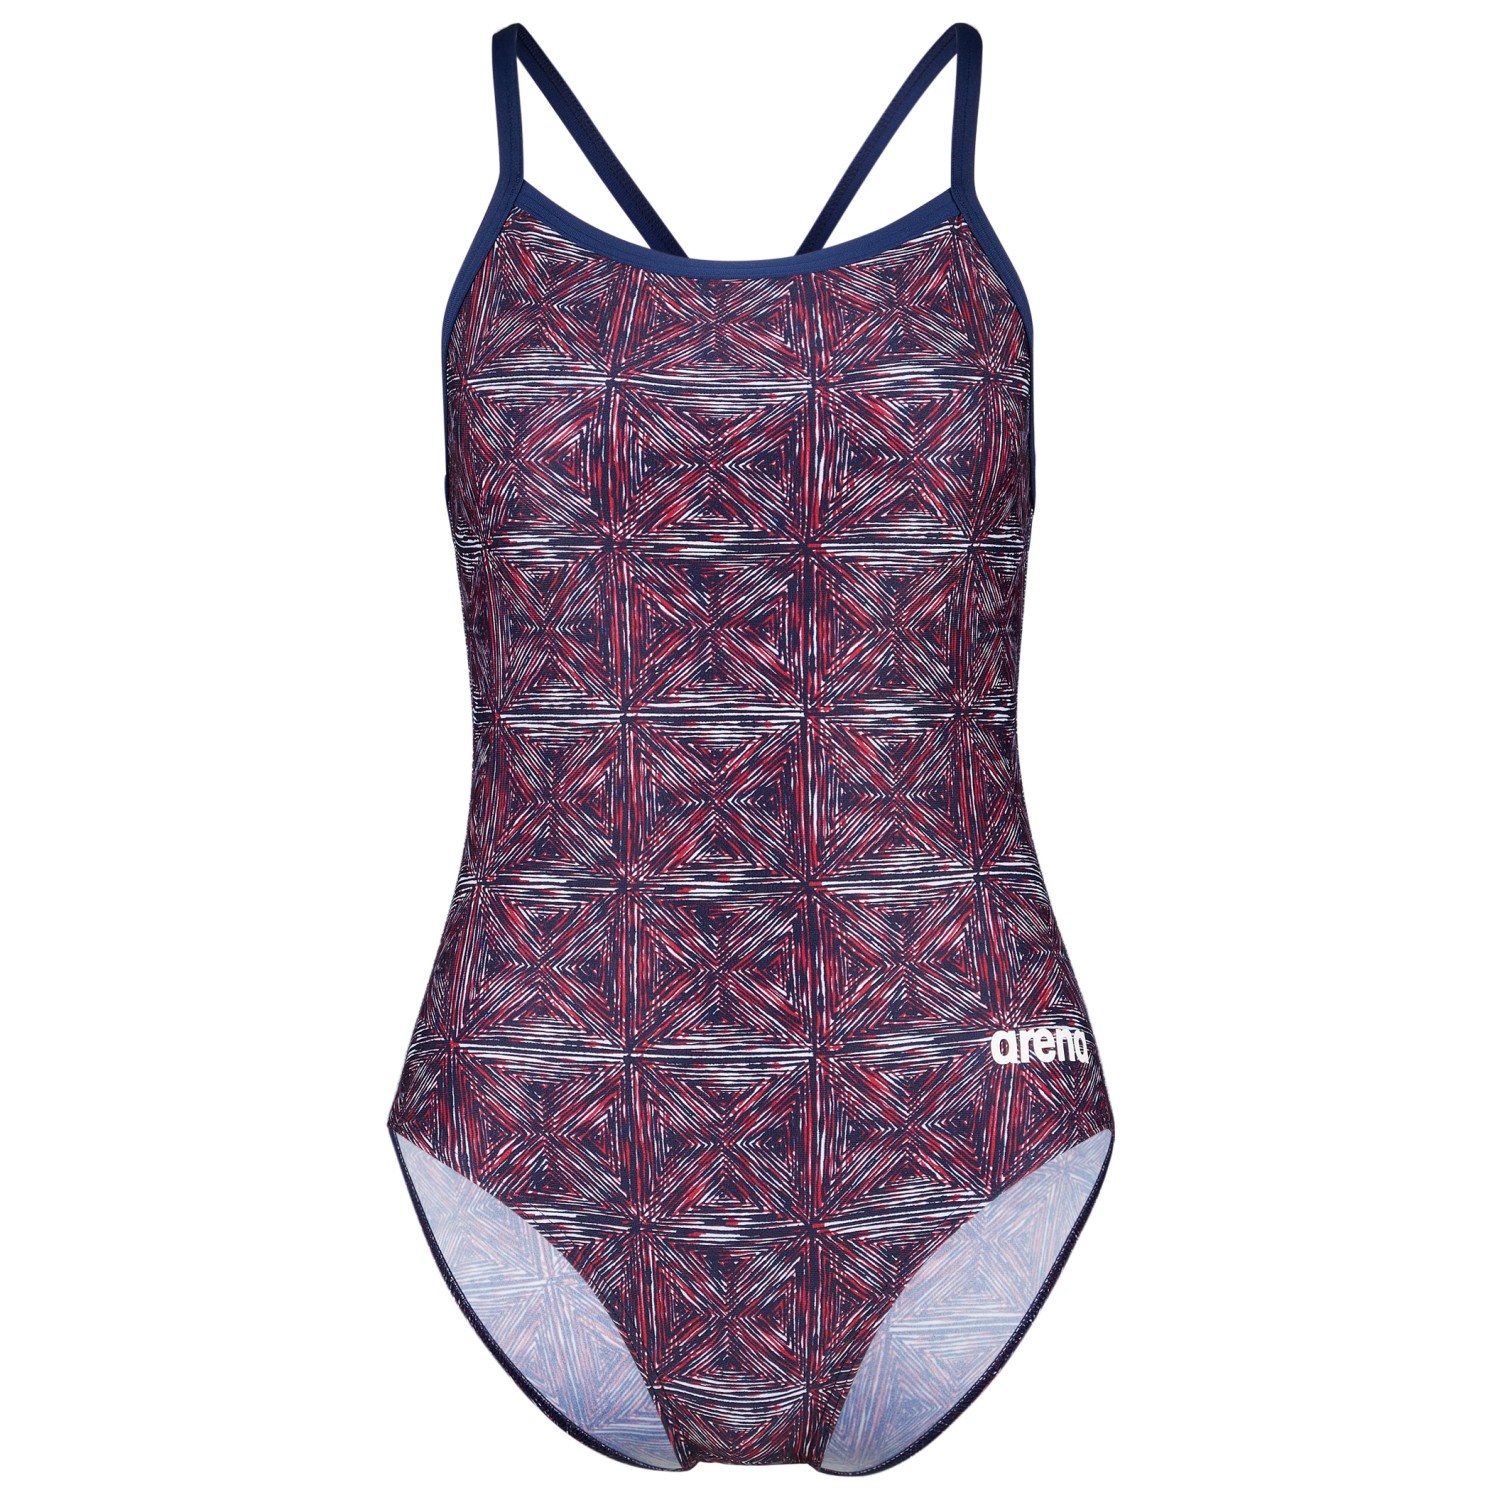 Купальник Arena Women's Abstract Tiles Swimsuit Lightdrop, цвет Navy/Team Redwhiteblue